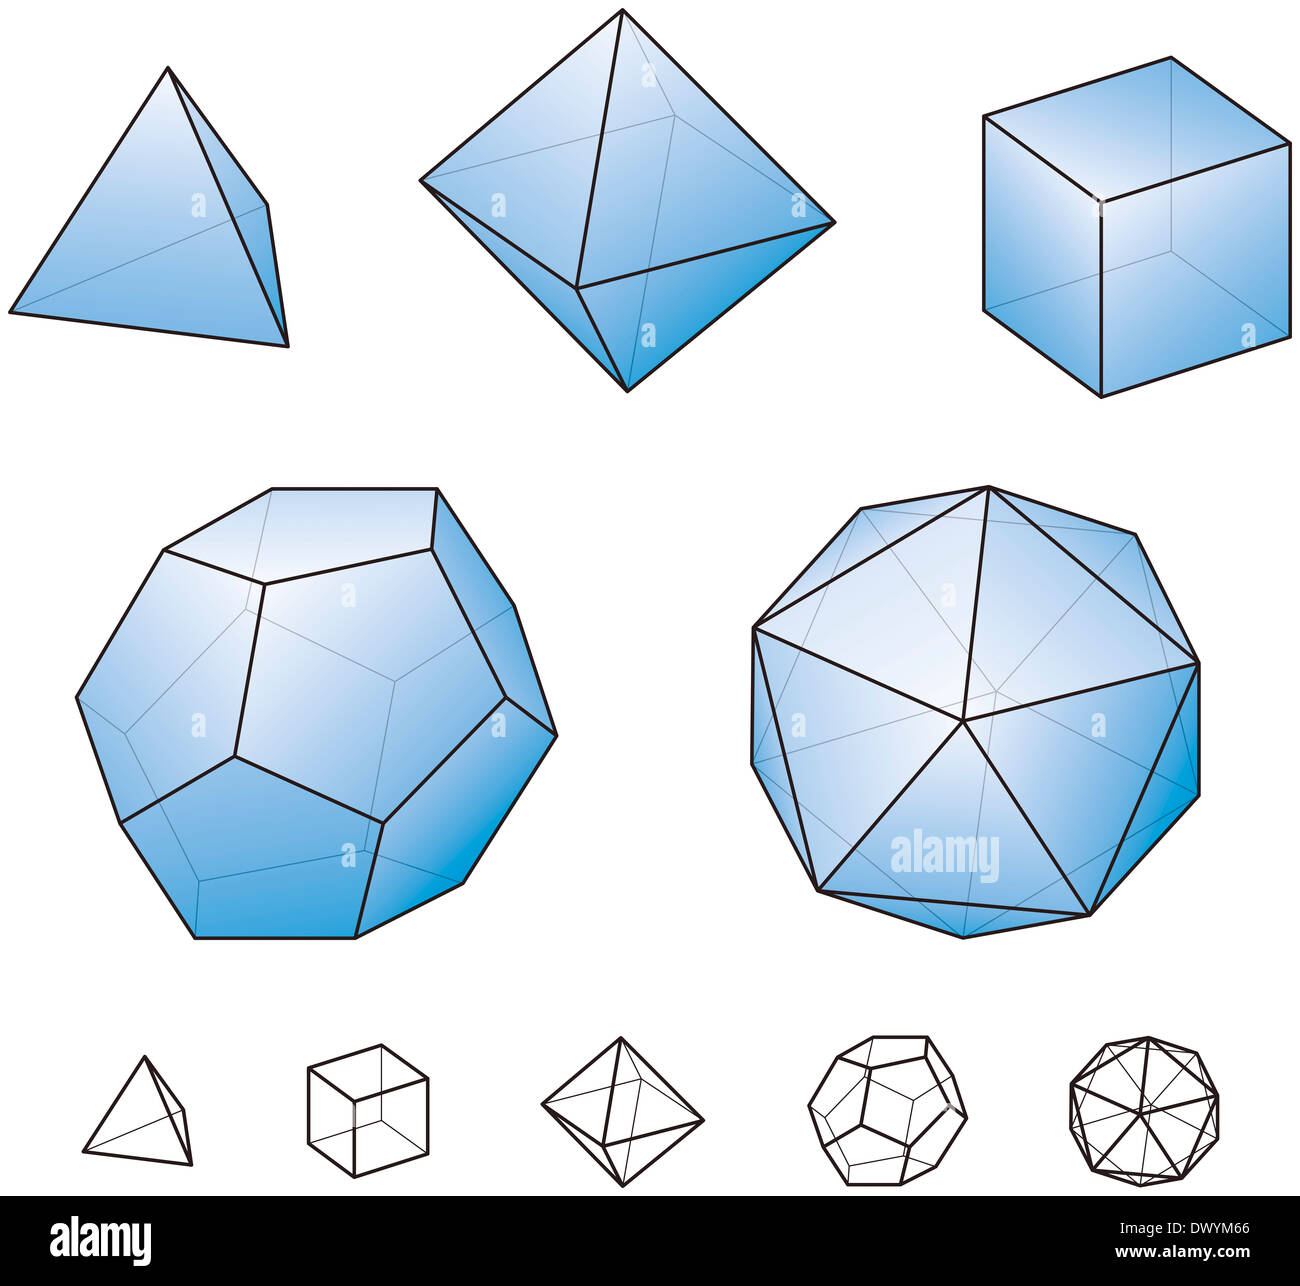 Solides de Platon avec surfaces bleu - polyèdres convexes réguliers, en géométrie euclidienne Banque D'Images